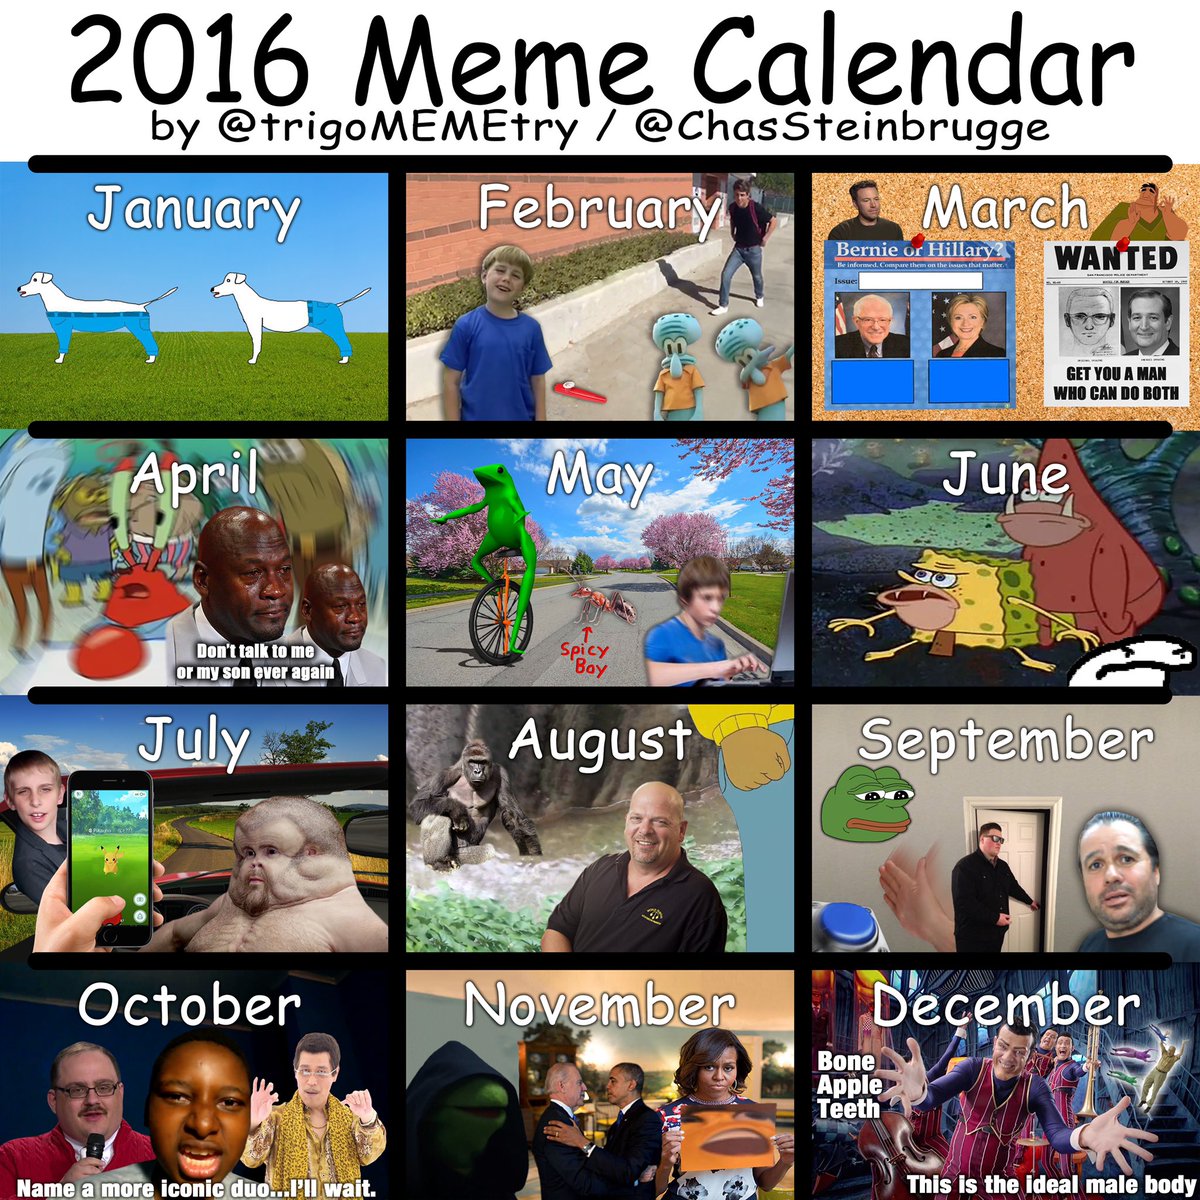 January 2021 Calendar Meme canvasly